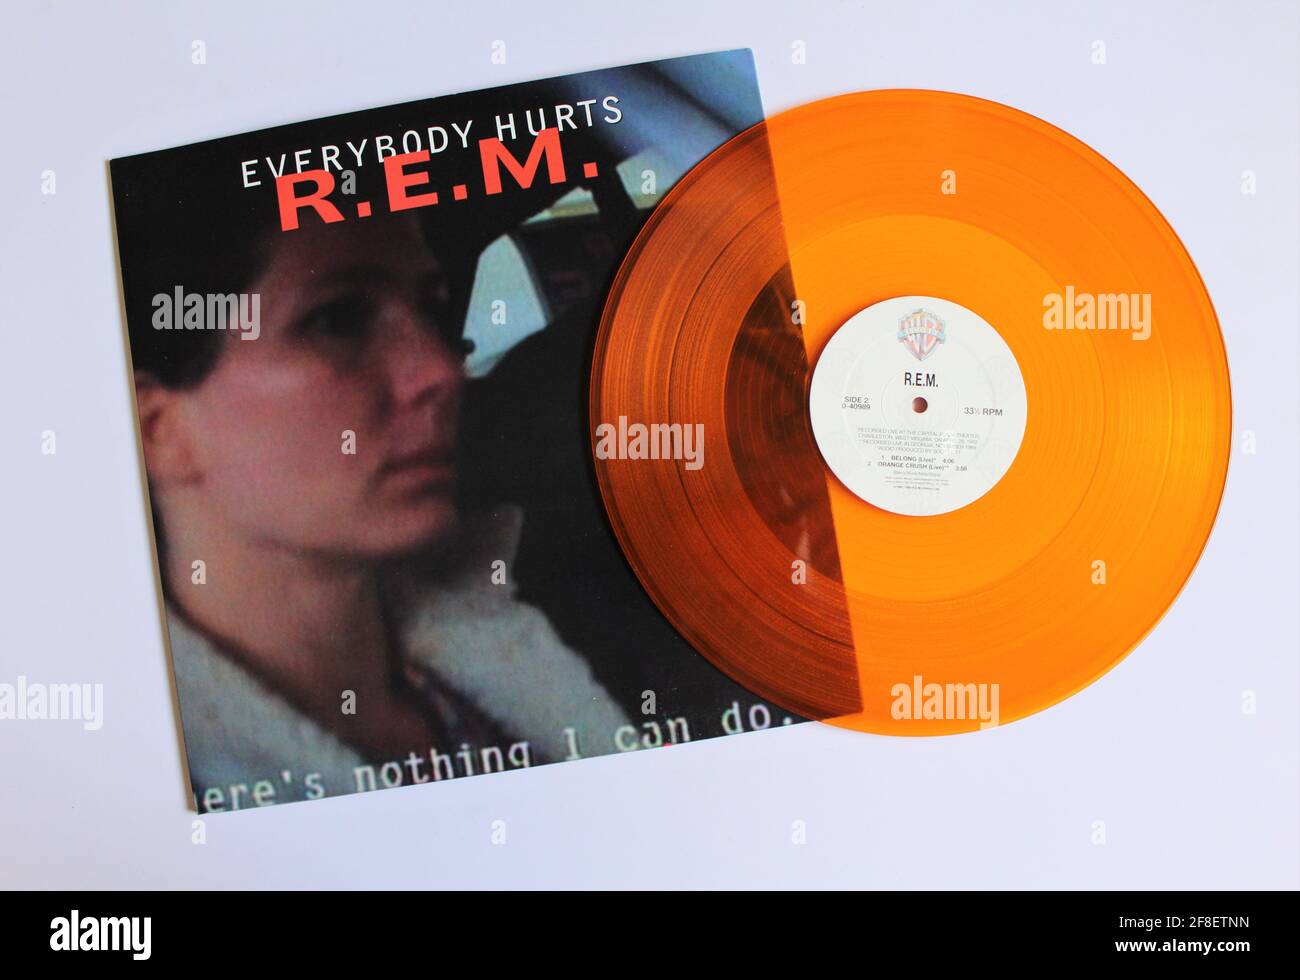 Album musicale R.E.M. della band alternative rock su disco LP in vinile.  Titolo: Everybody hurts copertina dell'album Foto stock - Alamy